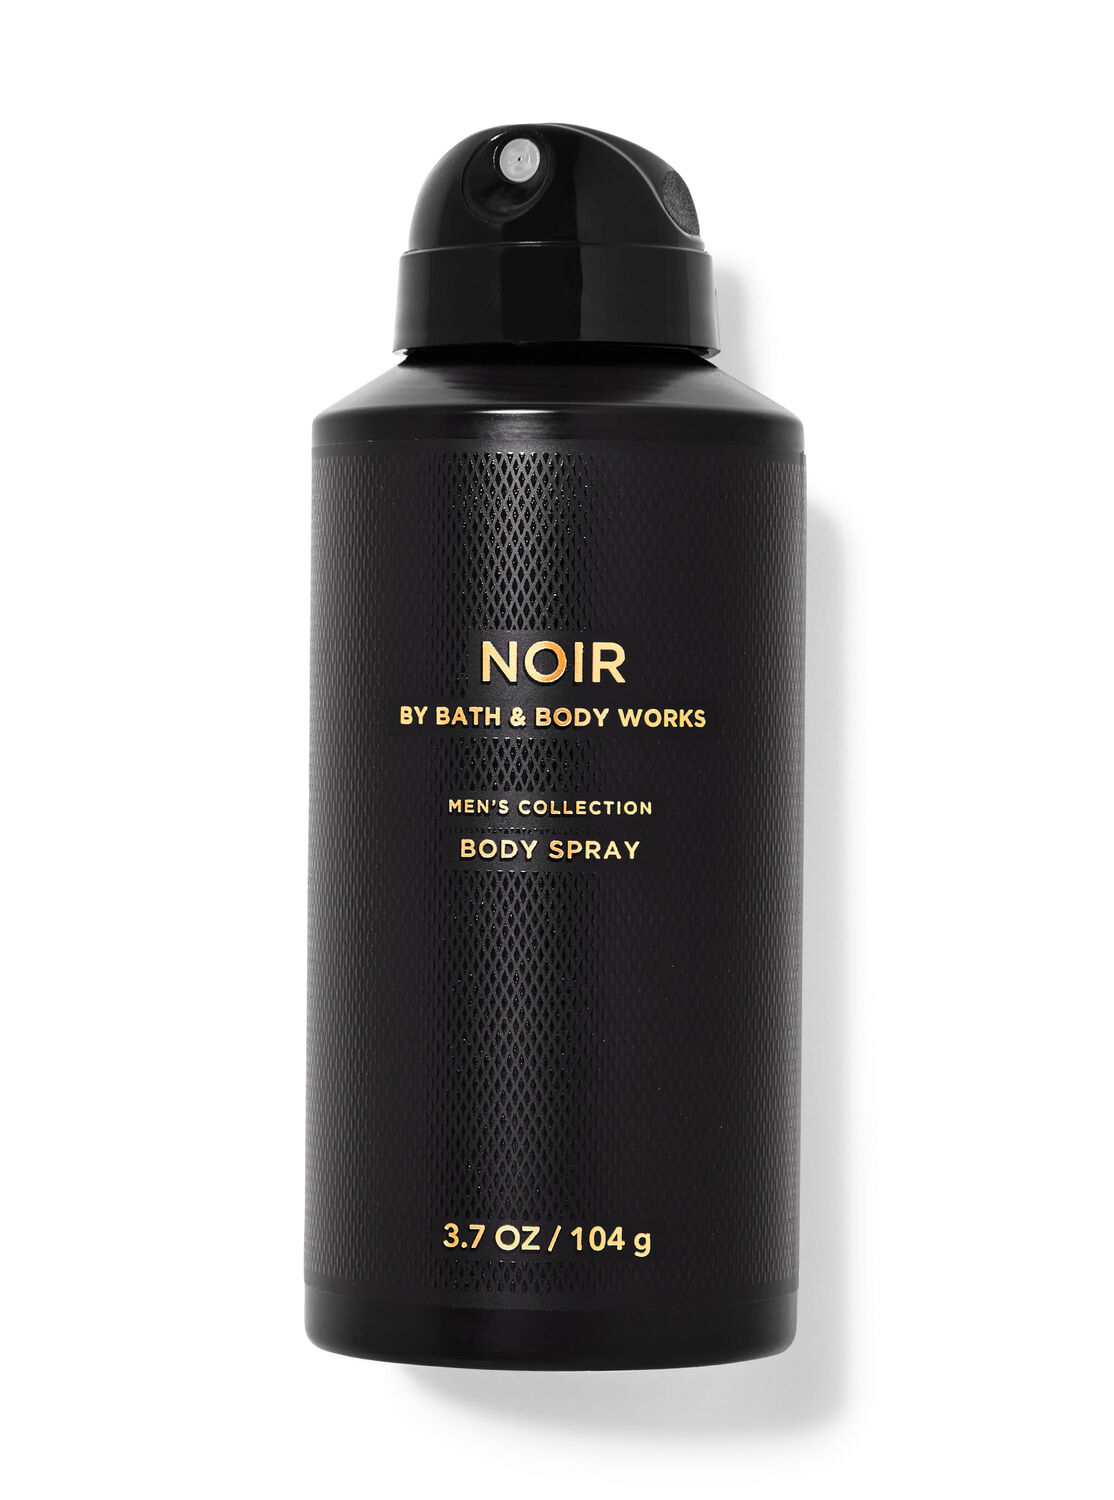 Bath & Body Works on X: We saw @CMC_22 wears Noir Deodorant from